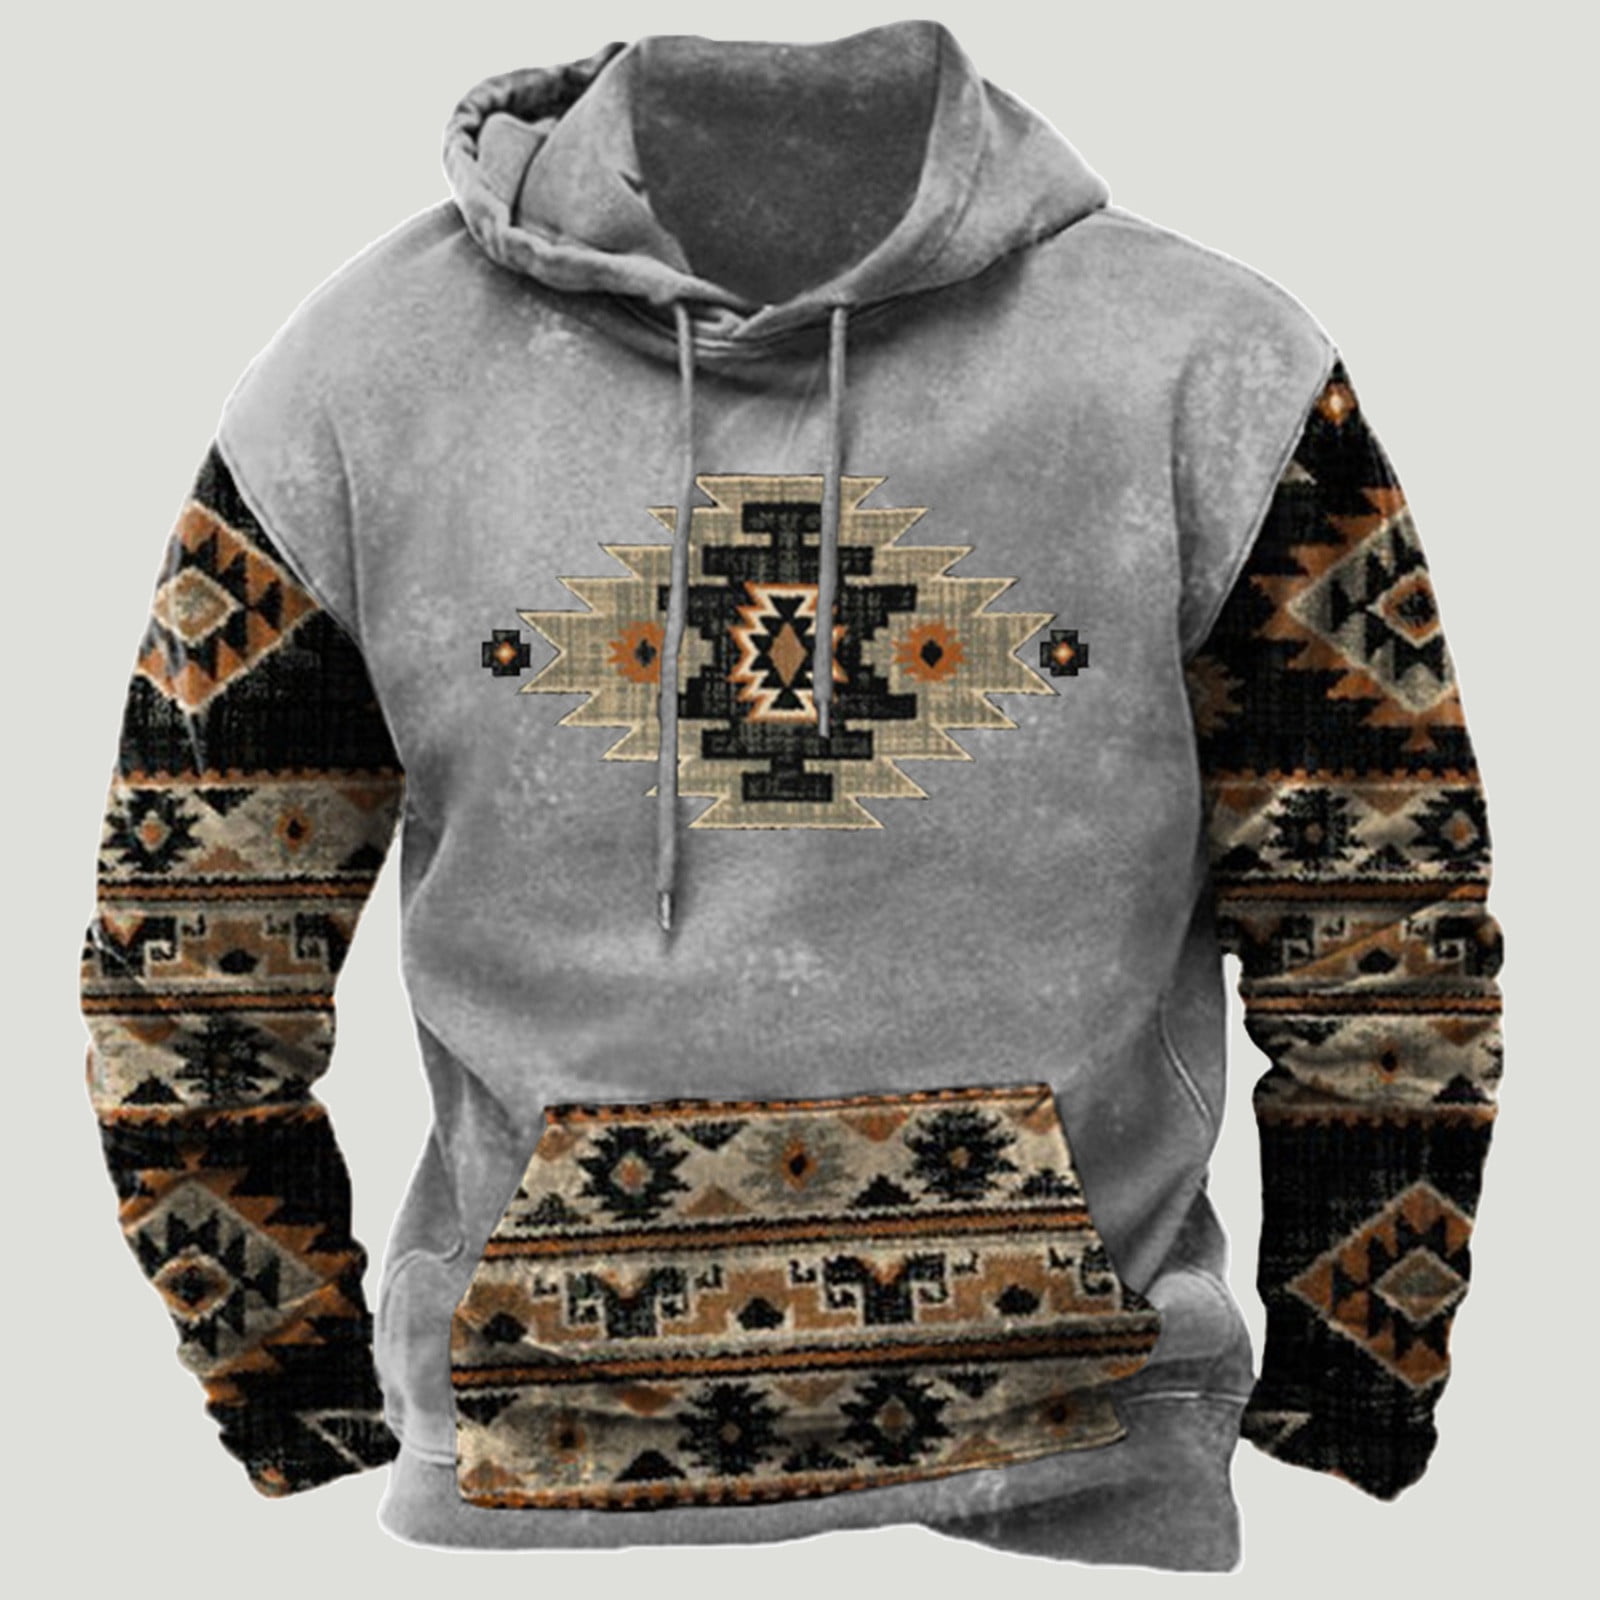 XFLWAM Hoodies Sweatshirt for Men Retro Ethnic Aztec Tribal